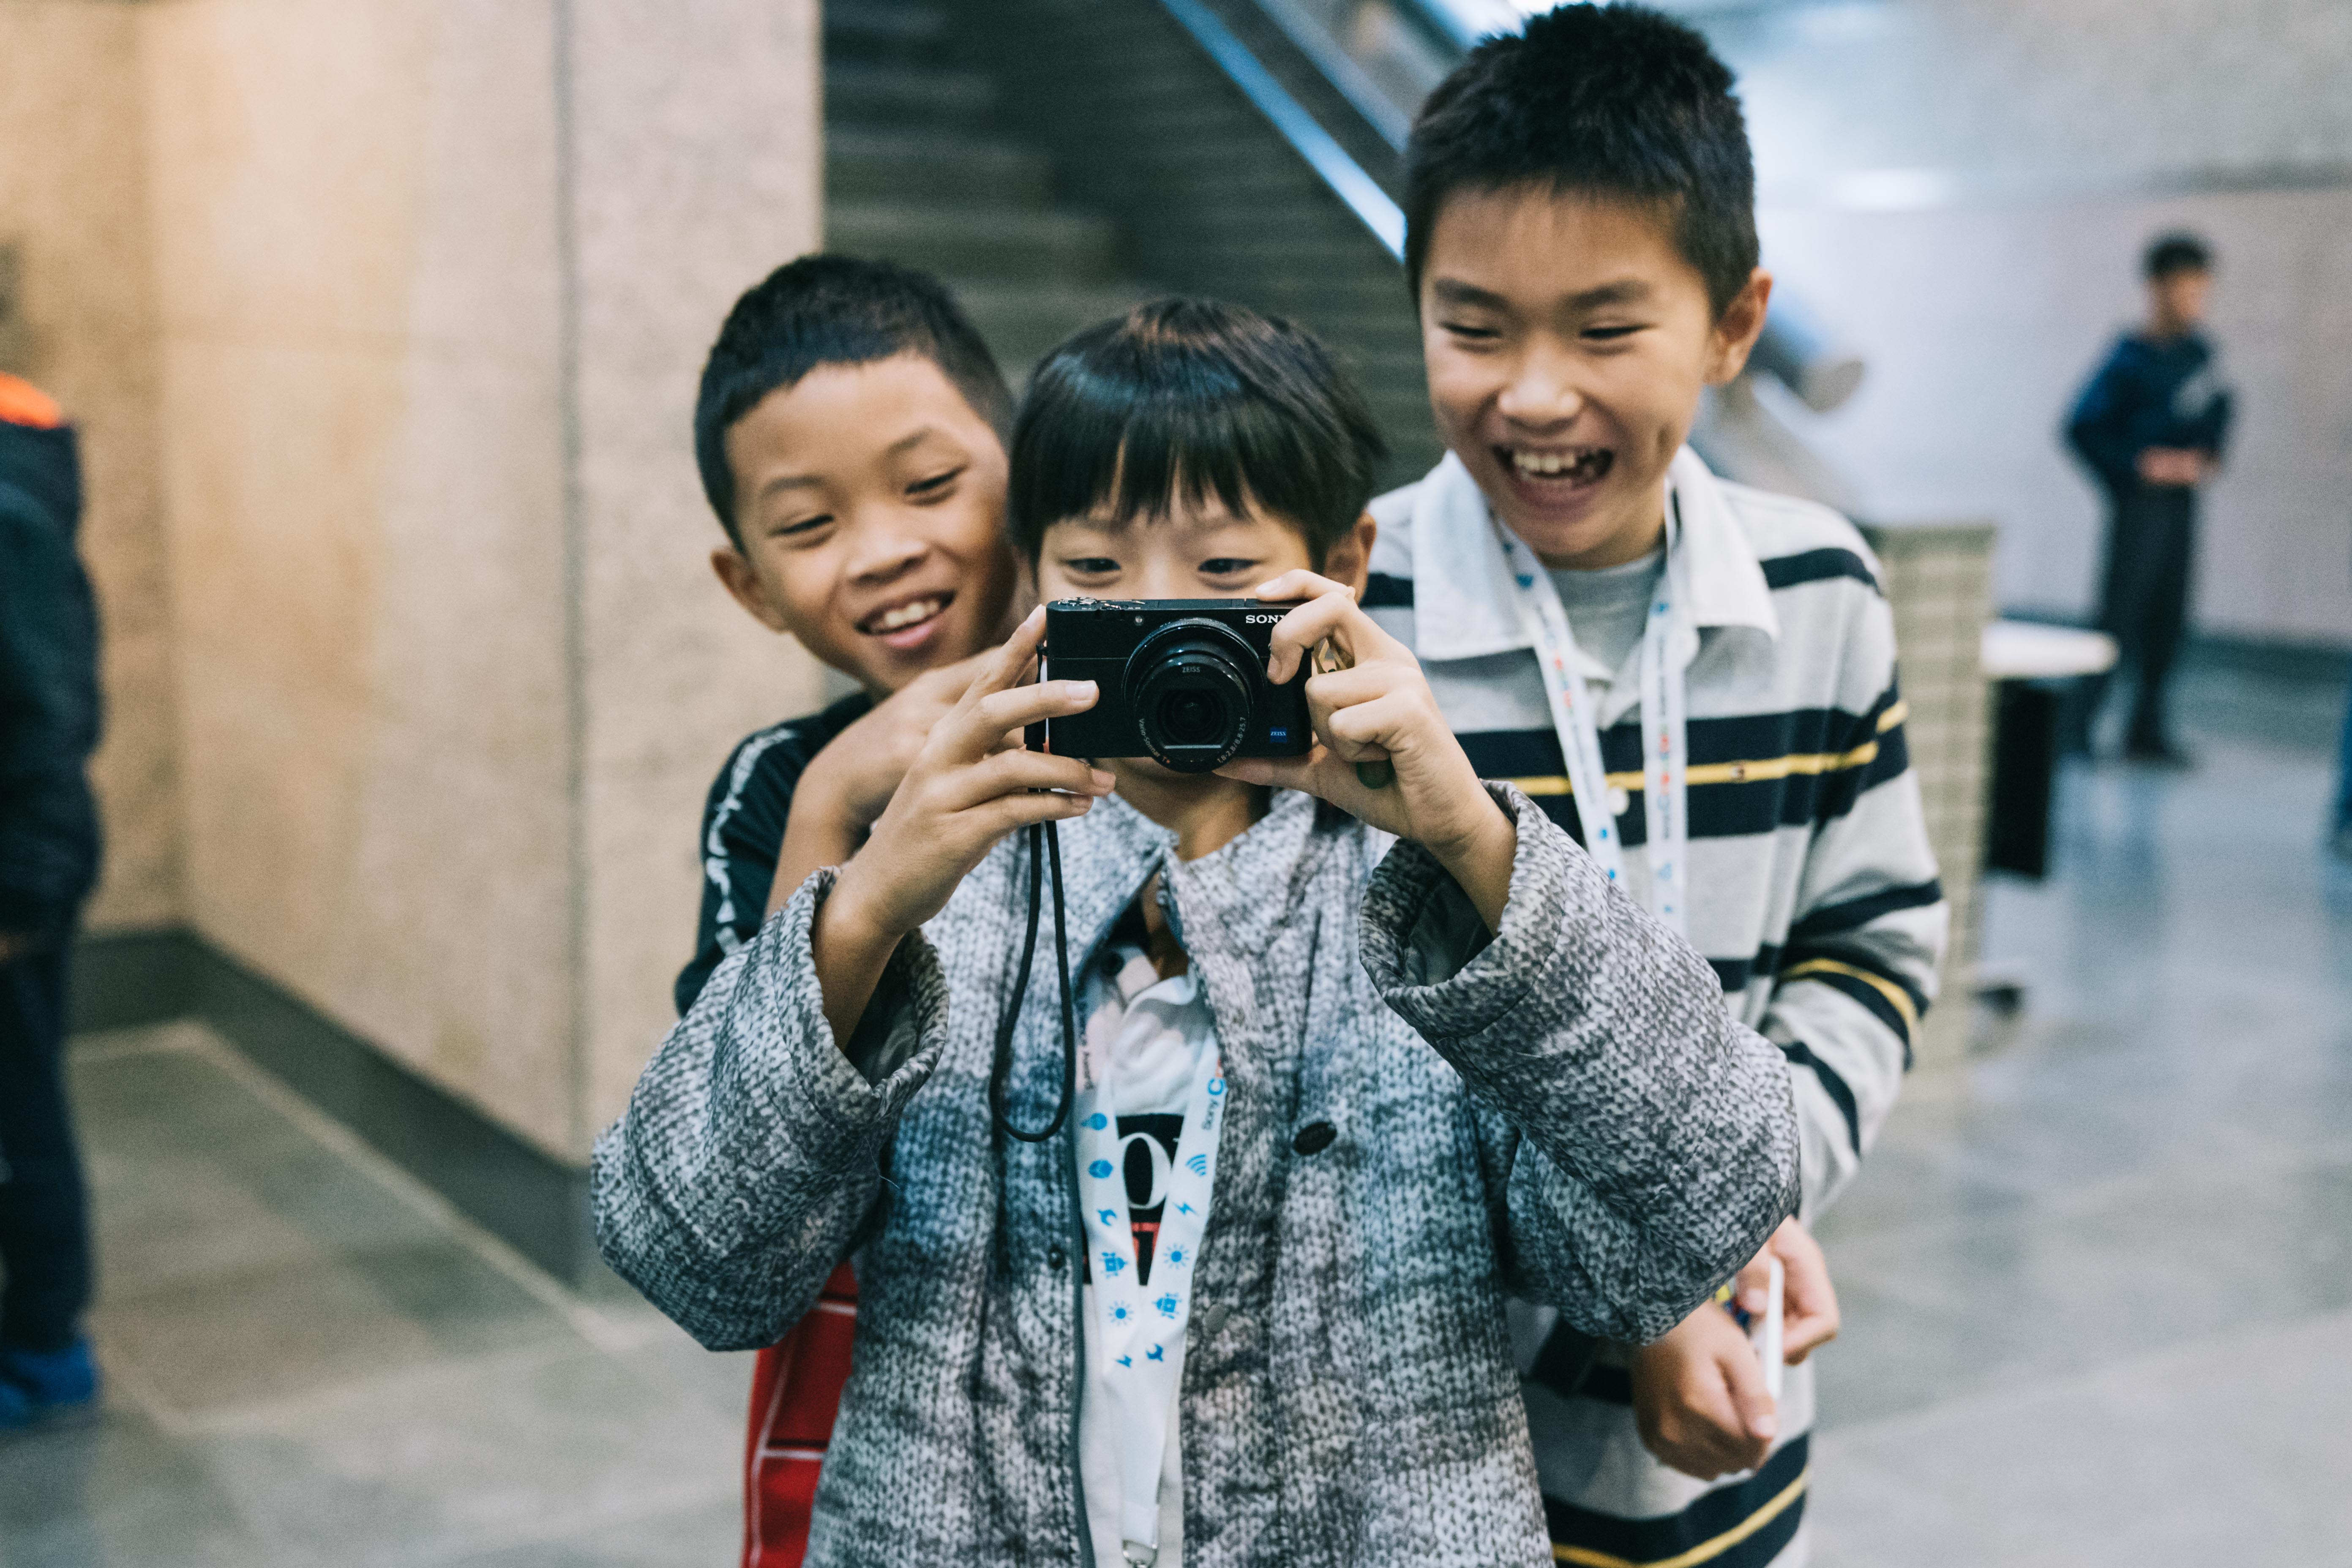 Sony Taiwan運用核心本業鼓勵孩子表達自我、用鏡頭說故事